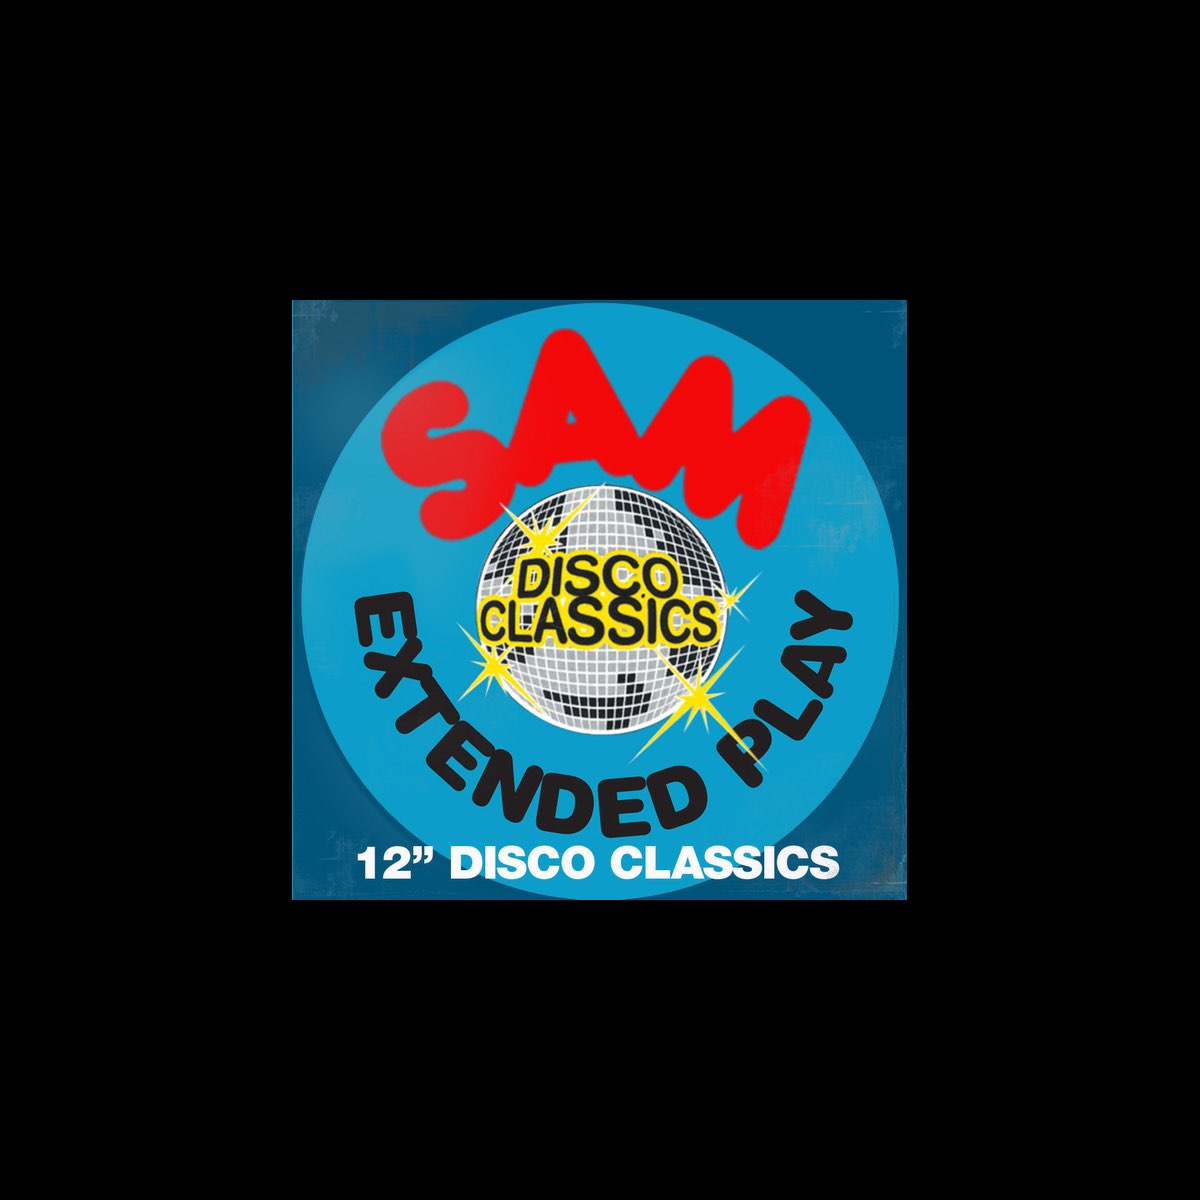 SAM RECORDS EXTENDED PLAY DISCO CLASSICS39sDoIt2Gary